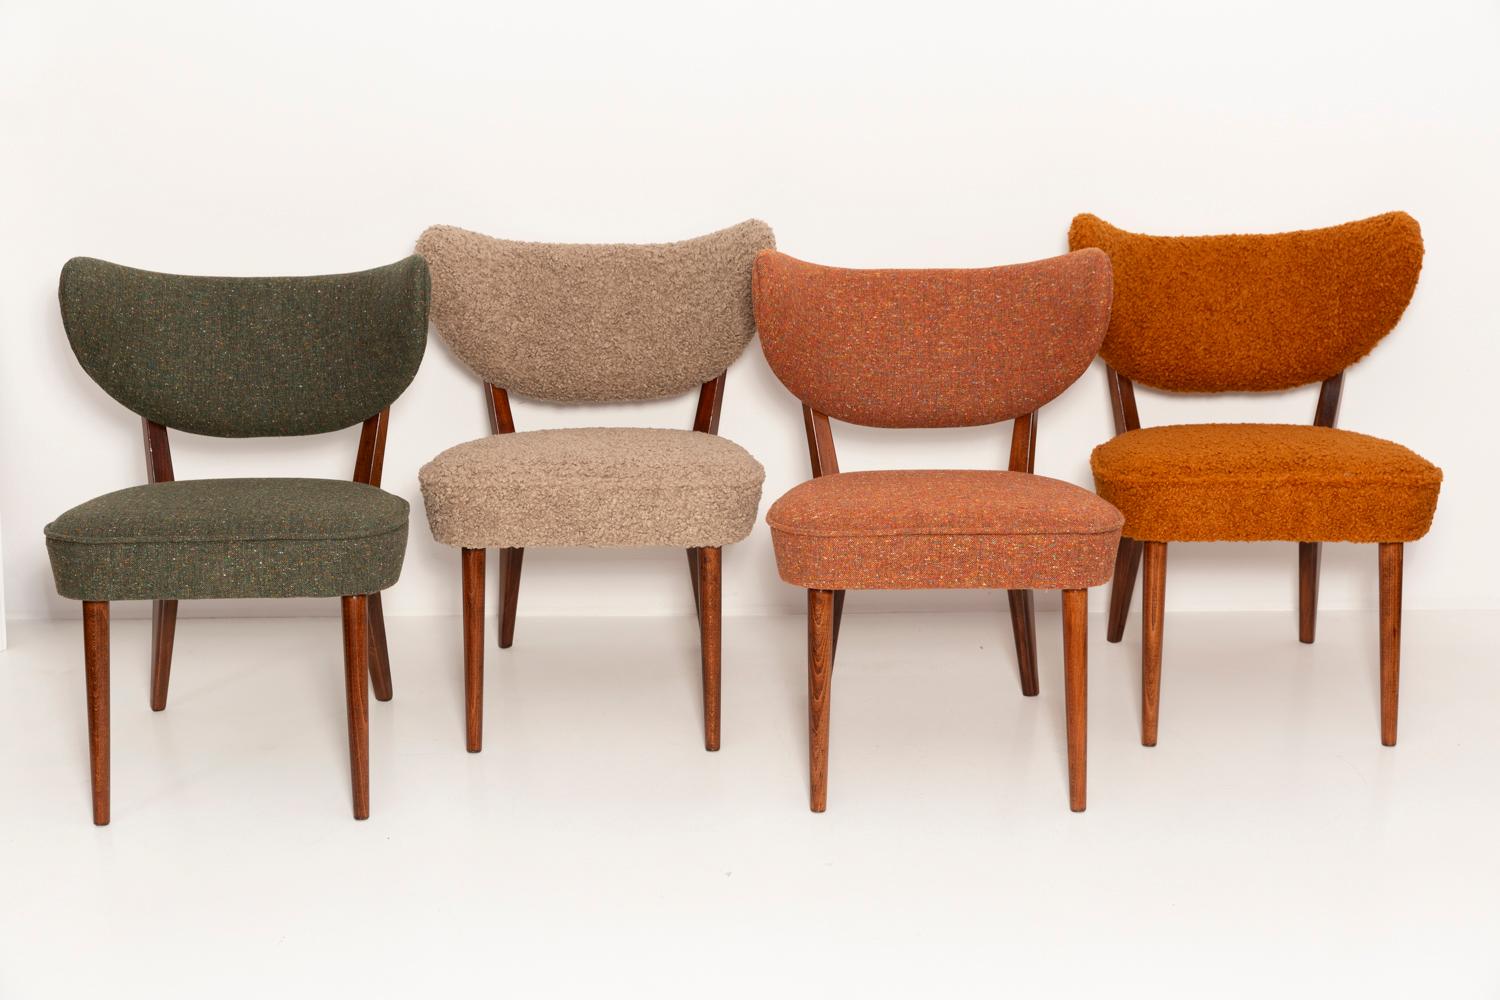 Sièges club élastiques, très confortables et stables.
Il s'agit de chaises contemporaines inspirées du style des années 1960. 
Elles peuvent être utilisées comme fauteuils et chaises à manger. 

La chaise a été conçue par Vintola Studio, une marque